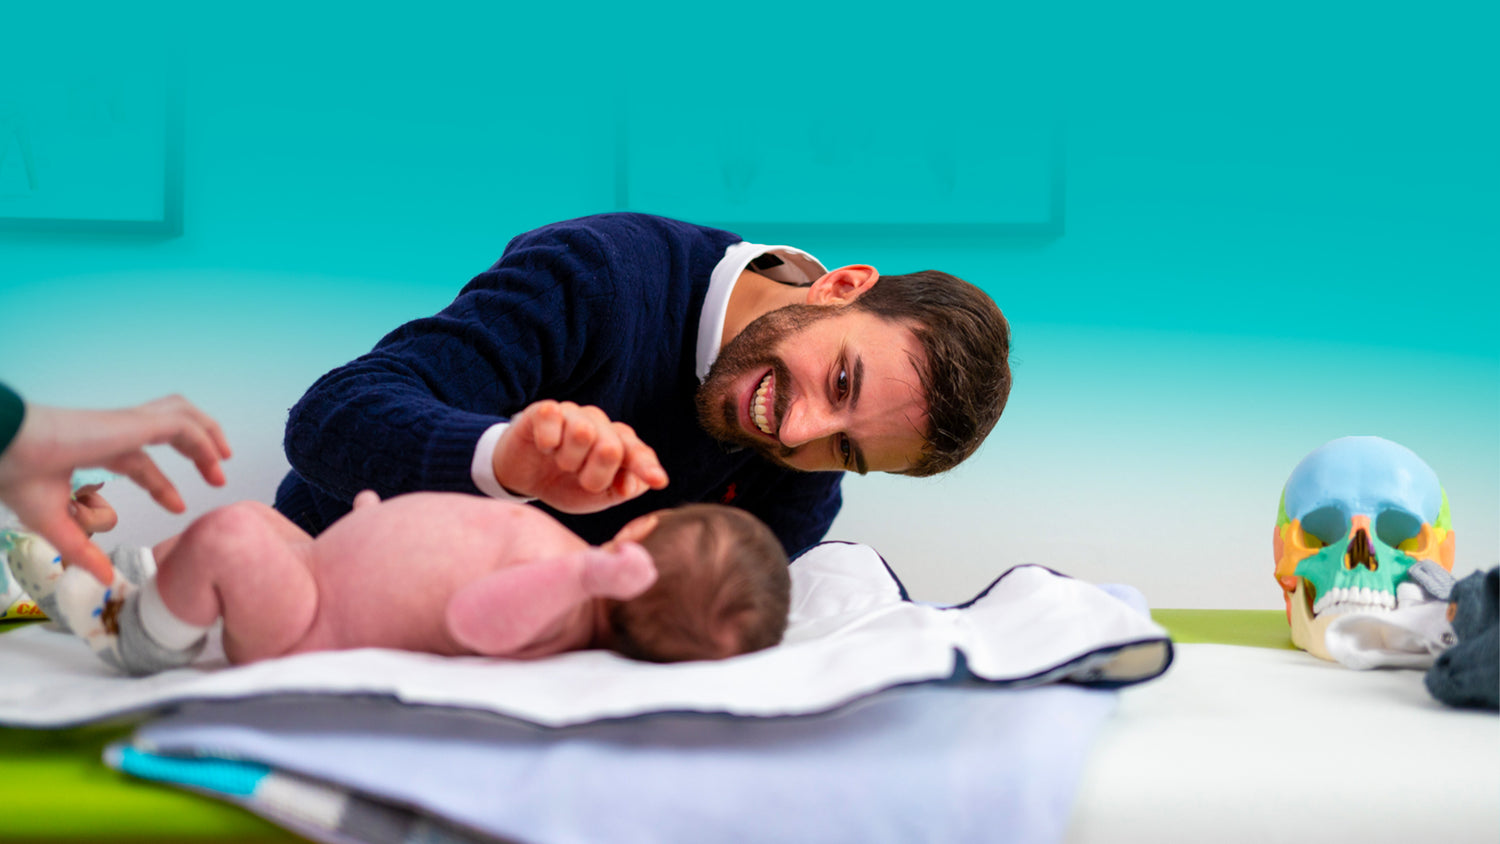 DrSilva che accarezza un neonato e spiega la missione e i valori del sito www.dr-silva.com